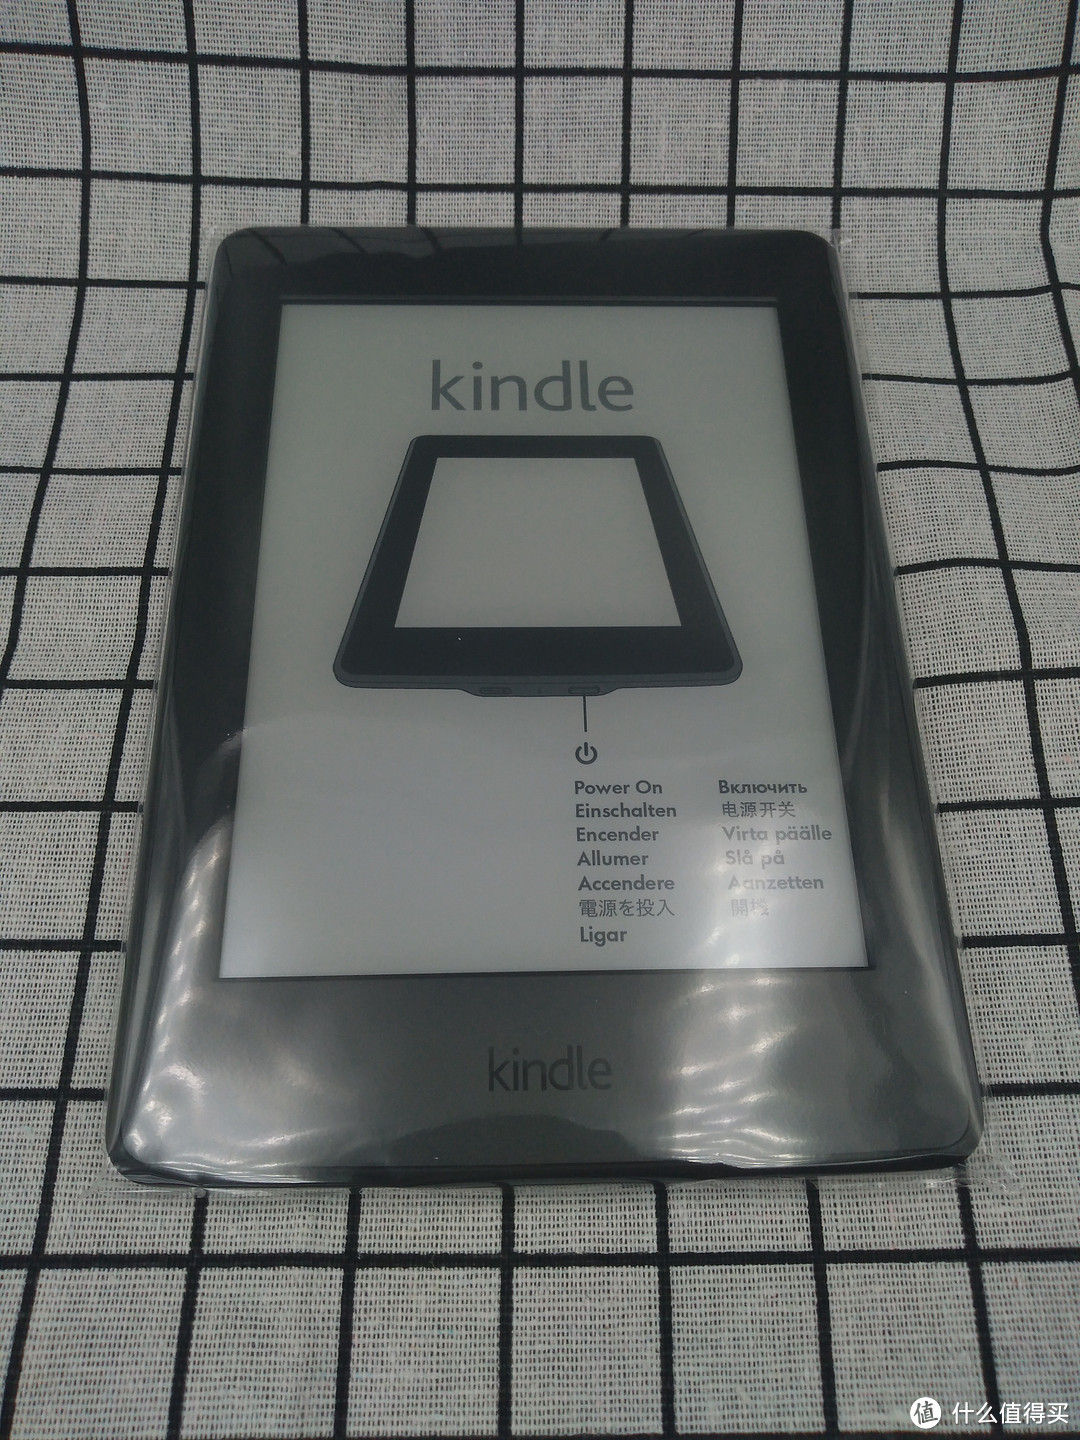 征文中奖AMAZON Kindle Paperwhite 电子书阅读器 开箱及一点参加征文小经验